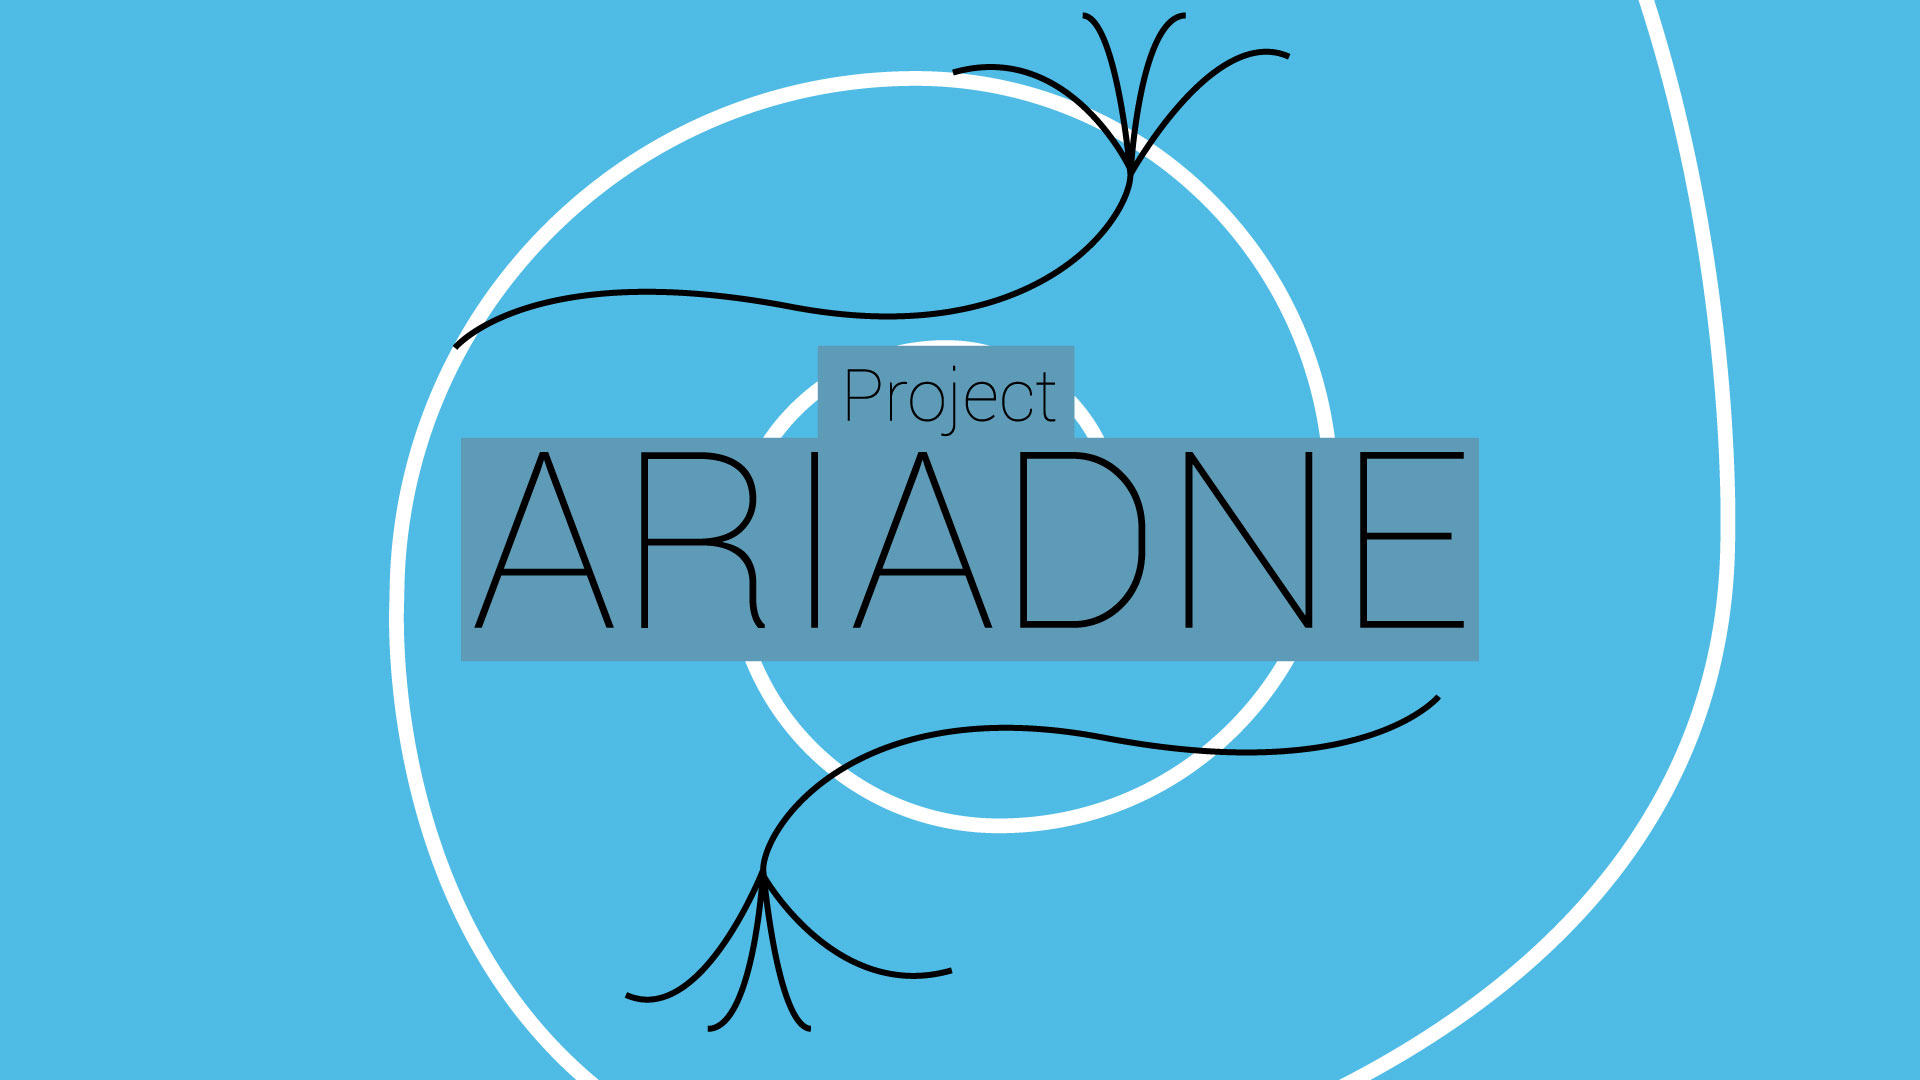 Project Ariadne: Part 1 - Concept